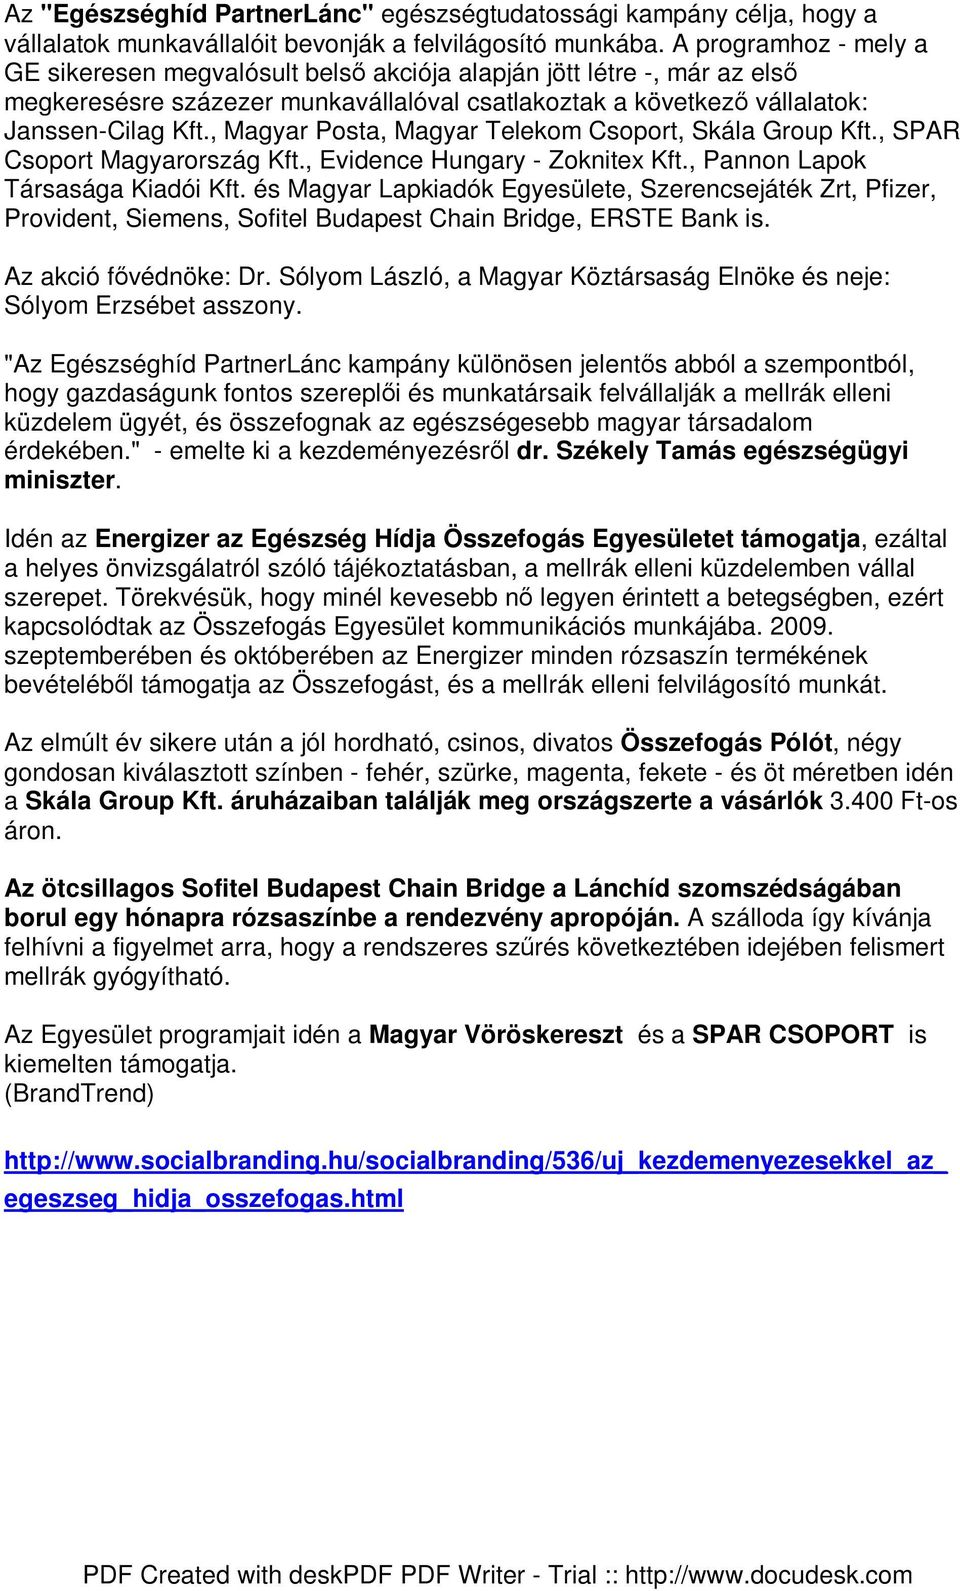 , Magyar Posta, Magyar Telekom Csoport, Skála Group Kft., SPAR Csoport Magyarország Kft., Evidence Hungary - Zoknitex Kft., Pannon Lapok Társasága Kiadói Kft.